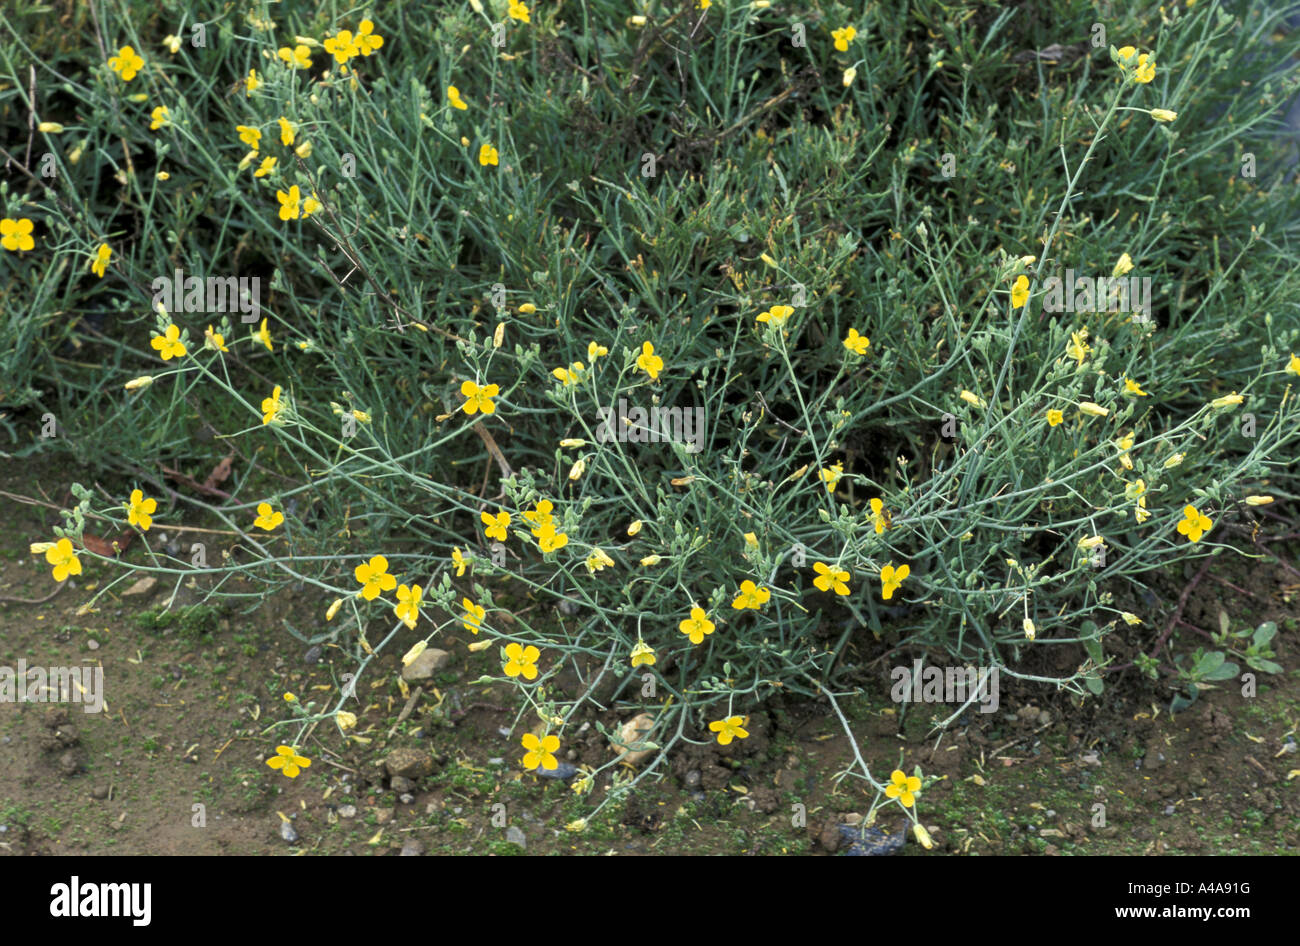 Diplotaxis tenuifolia Stock Photo